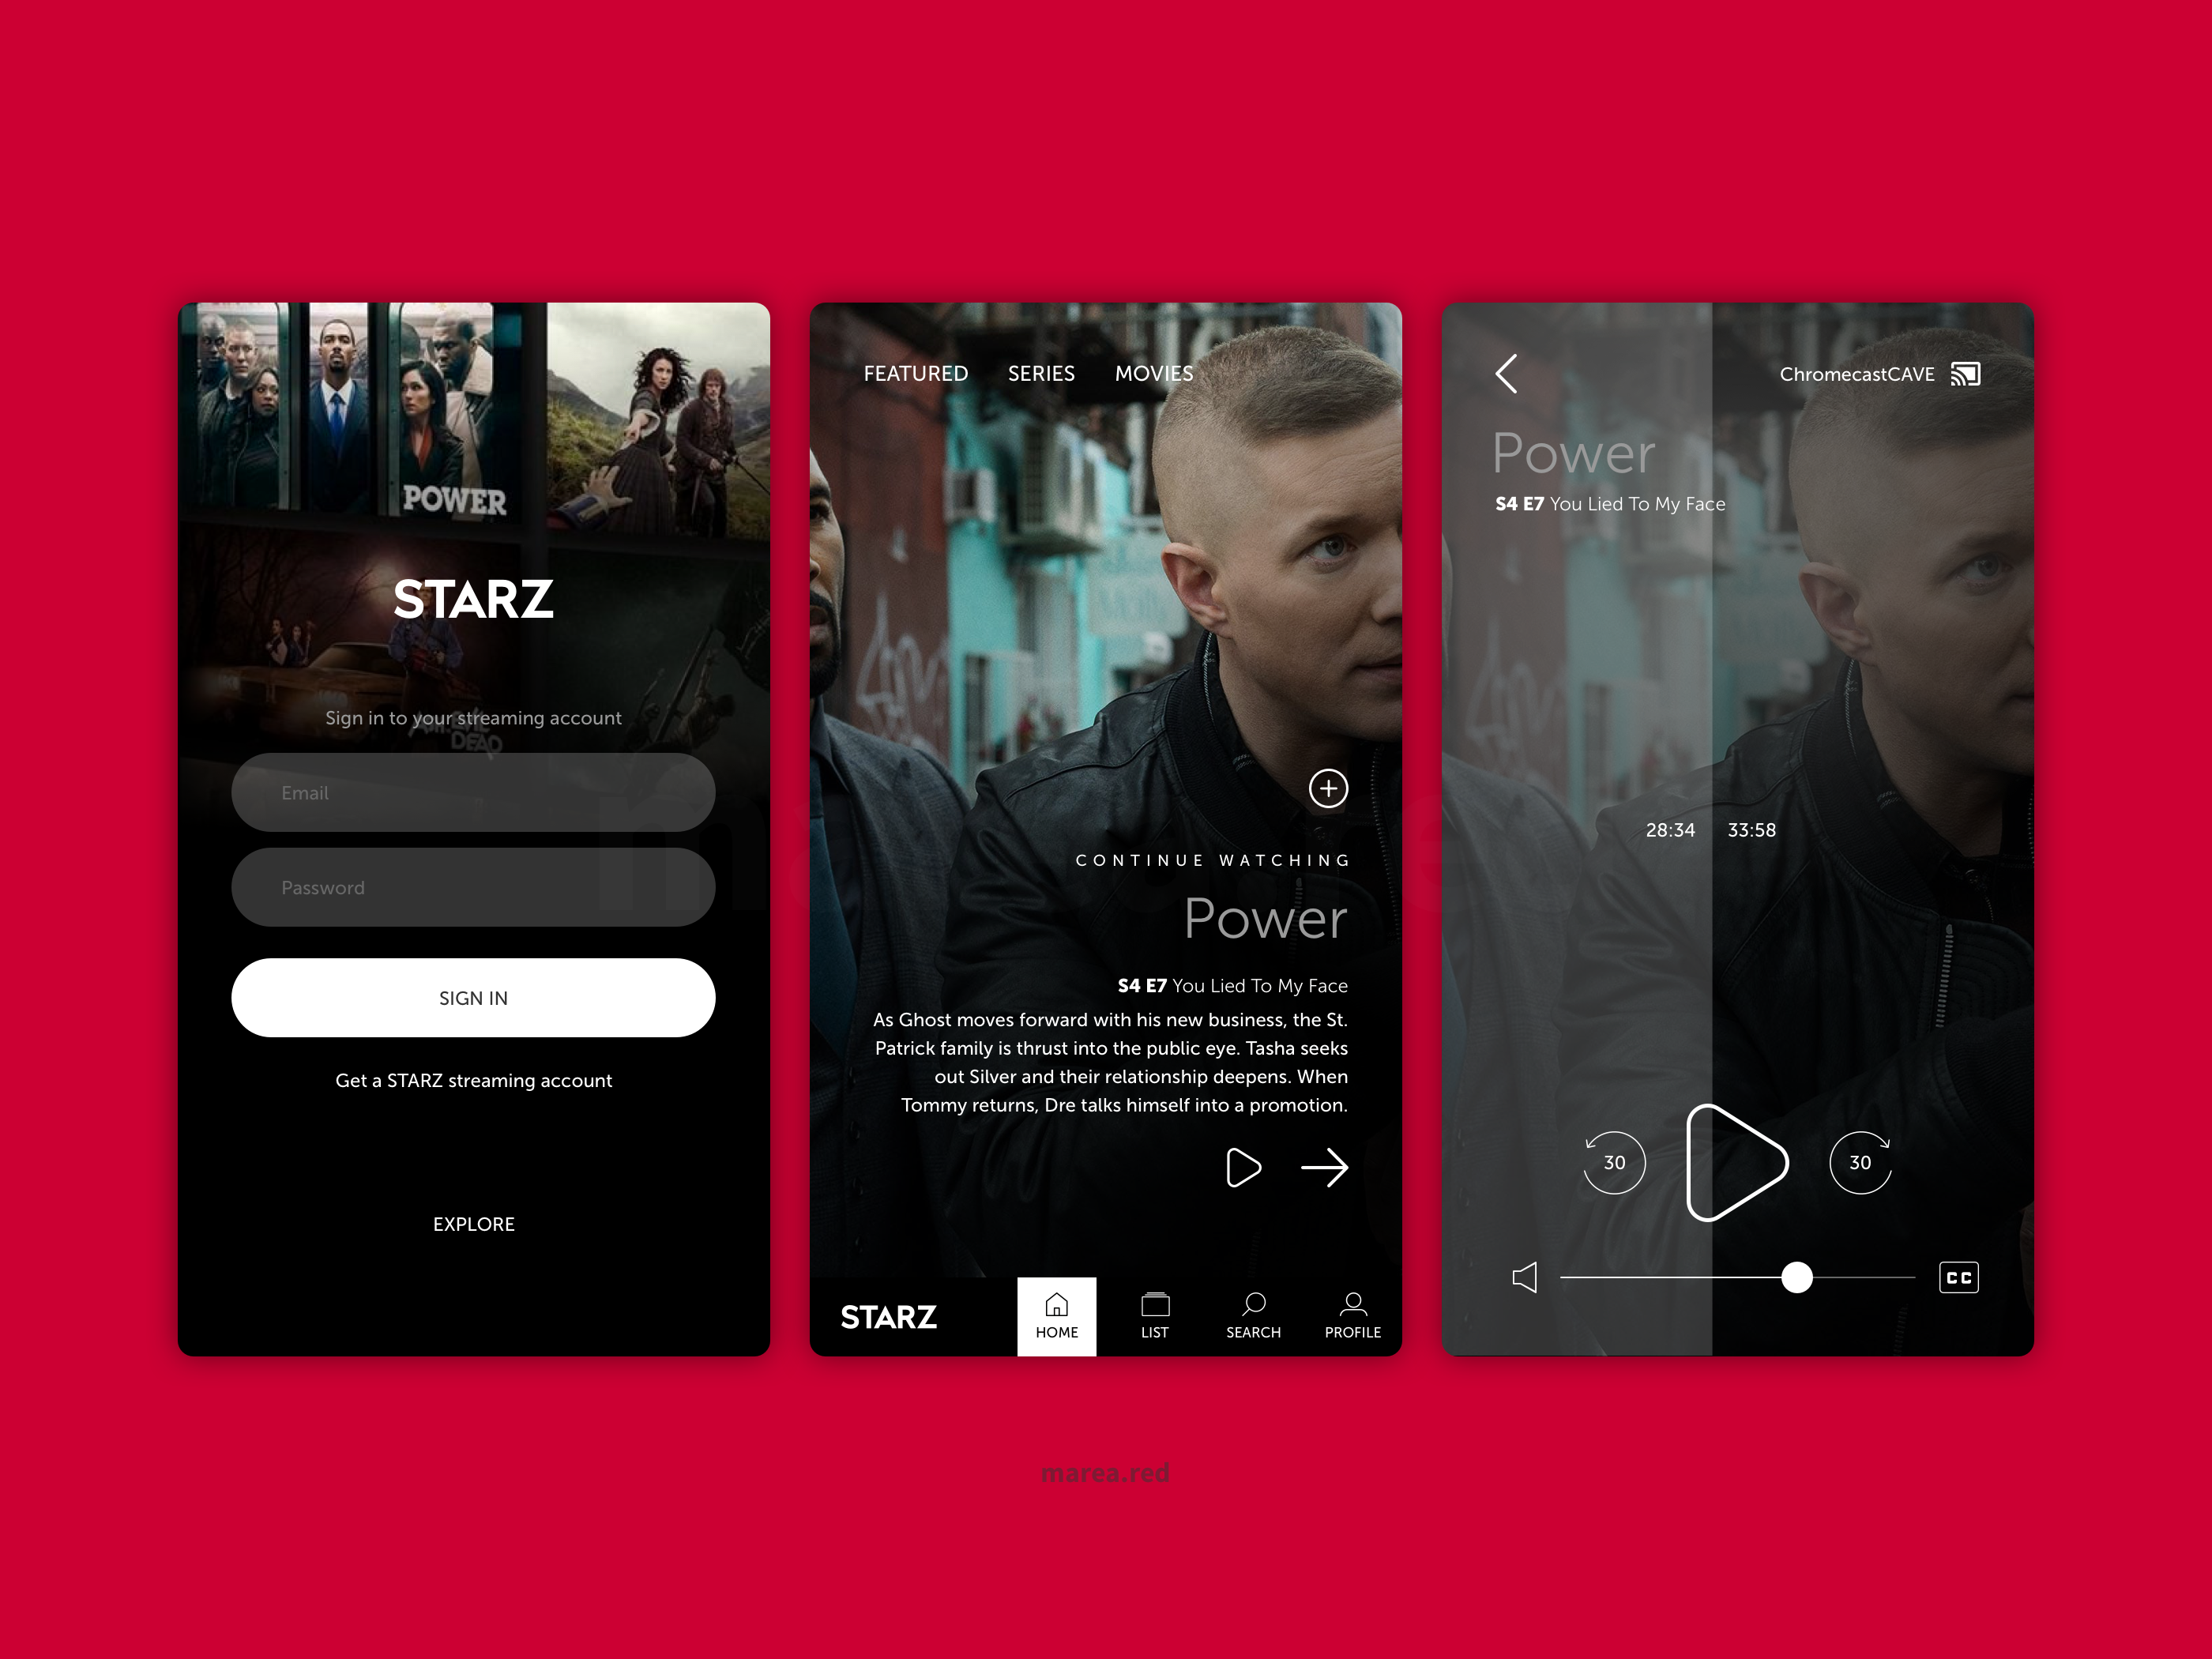 Twitter post: STARZ mobile app redesign